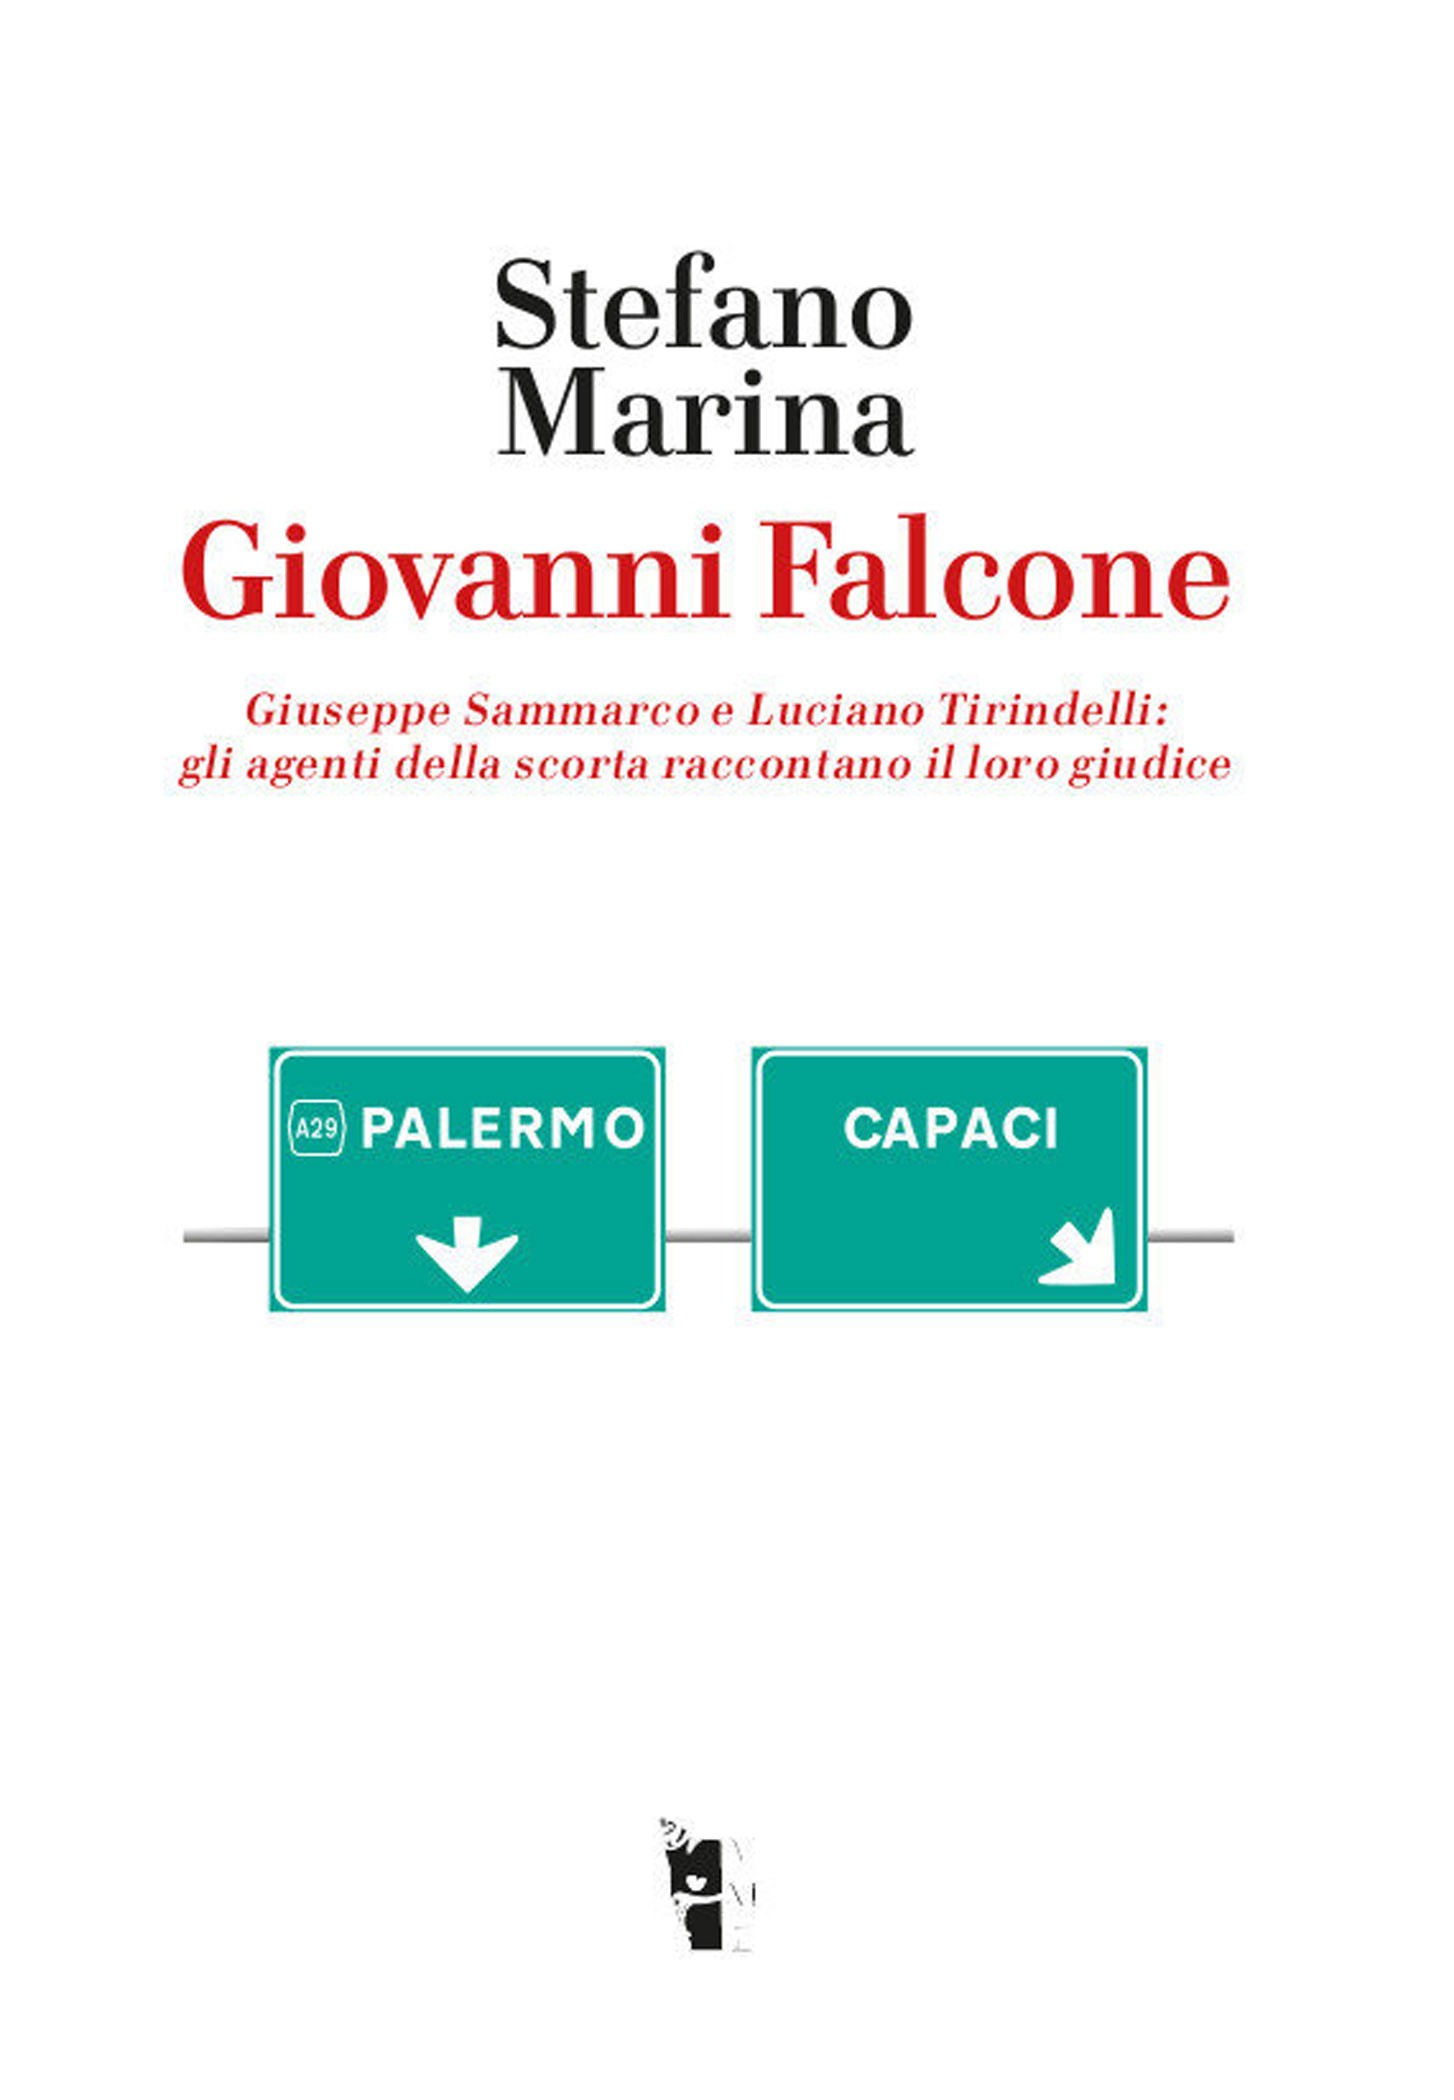 Giovanni Falcone - Librerie.coop